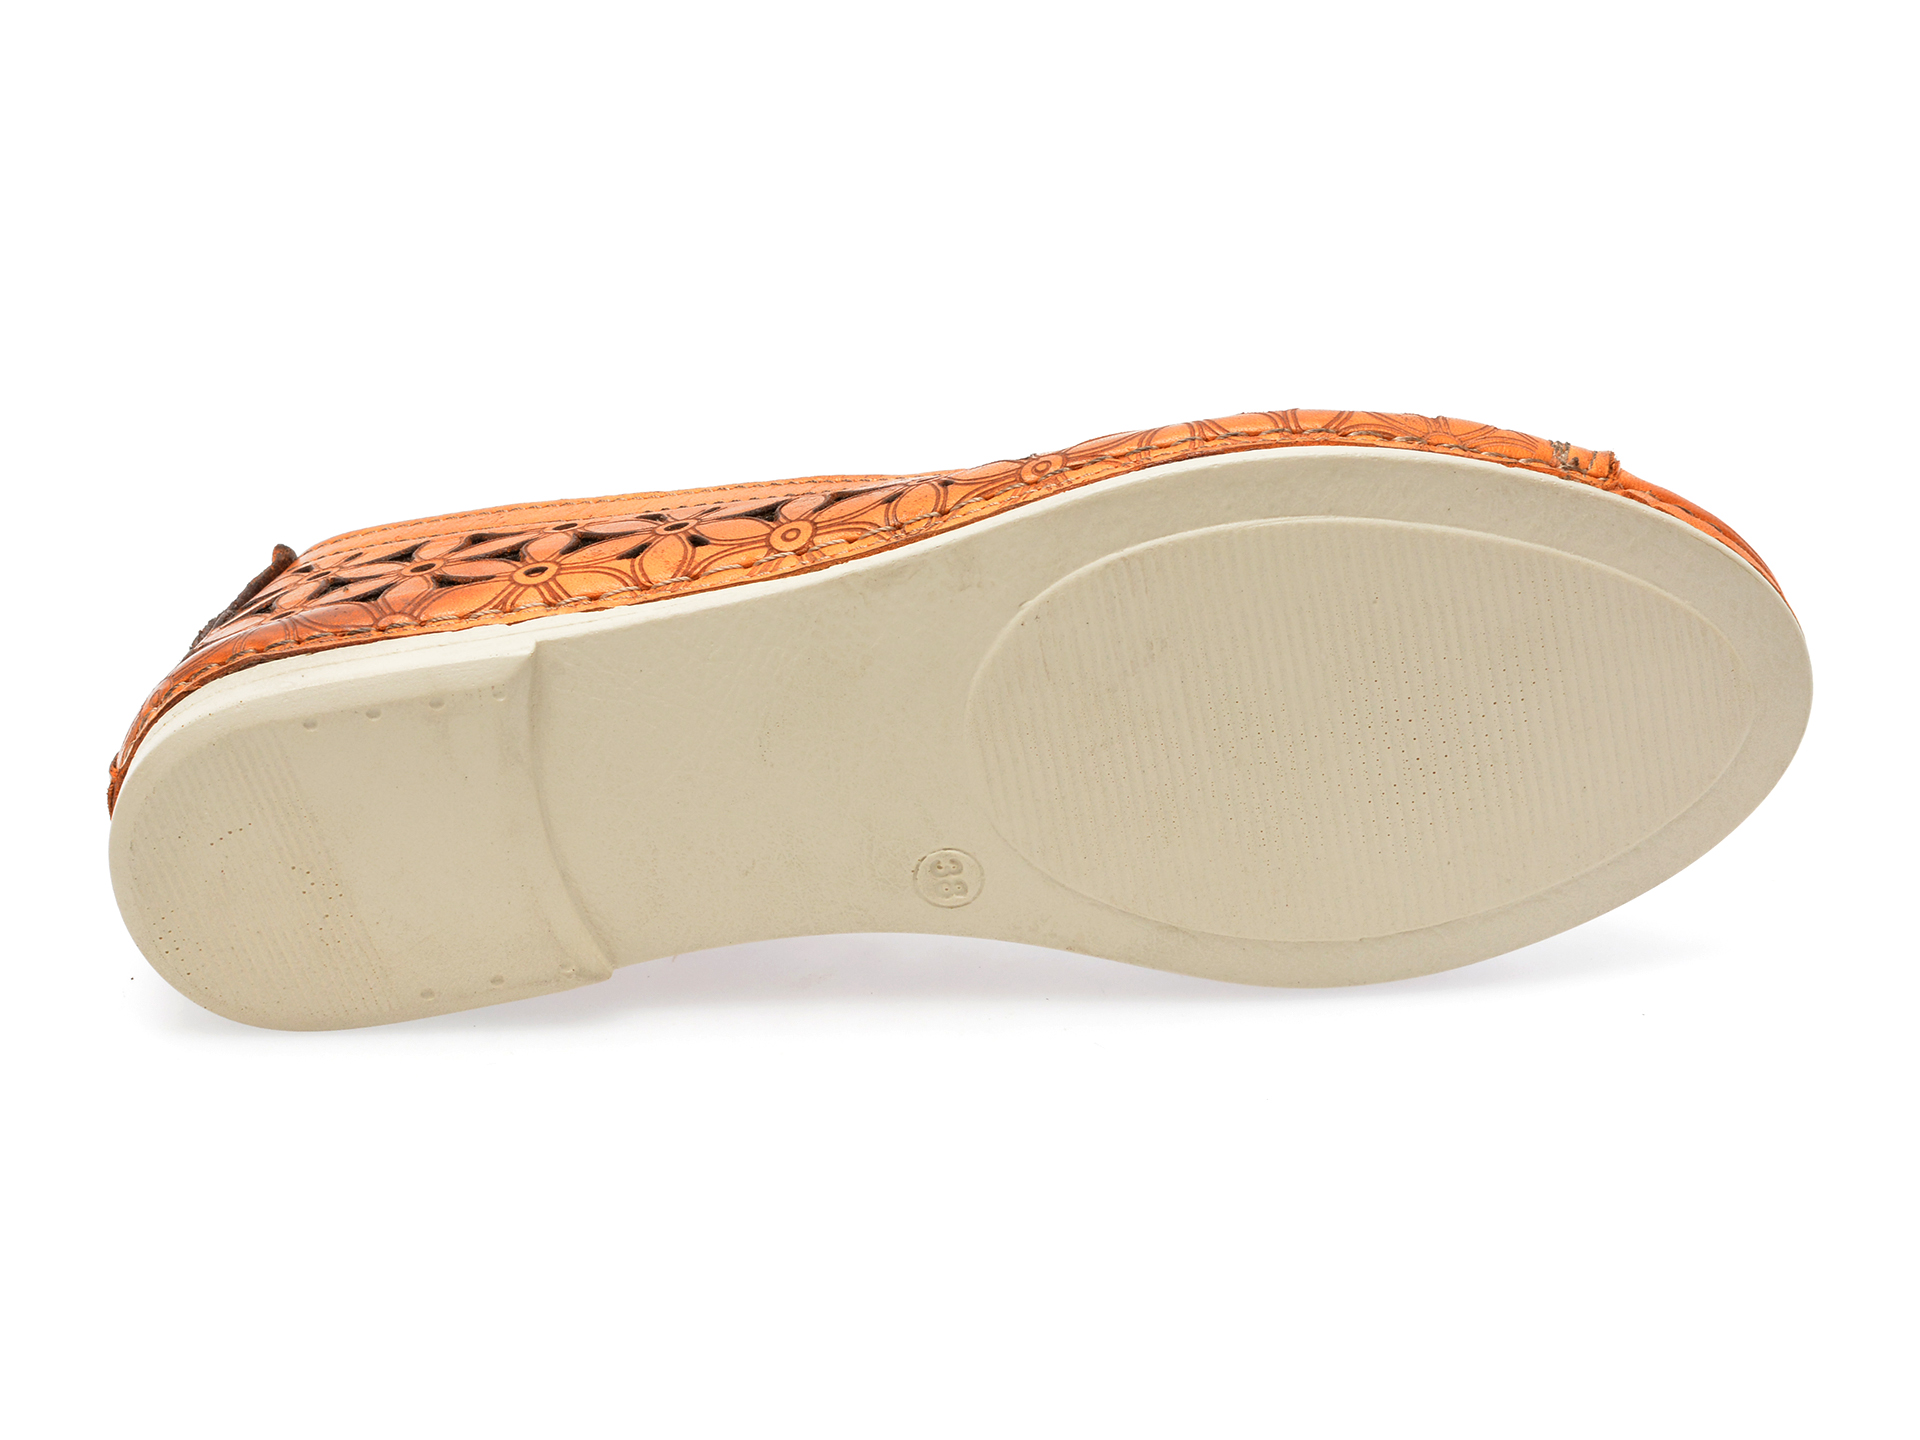 Pantofi FLAVIA PASSINI portocalii, 1105, din piele naturala